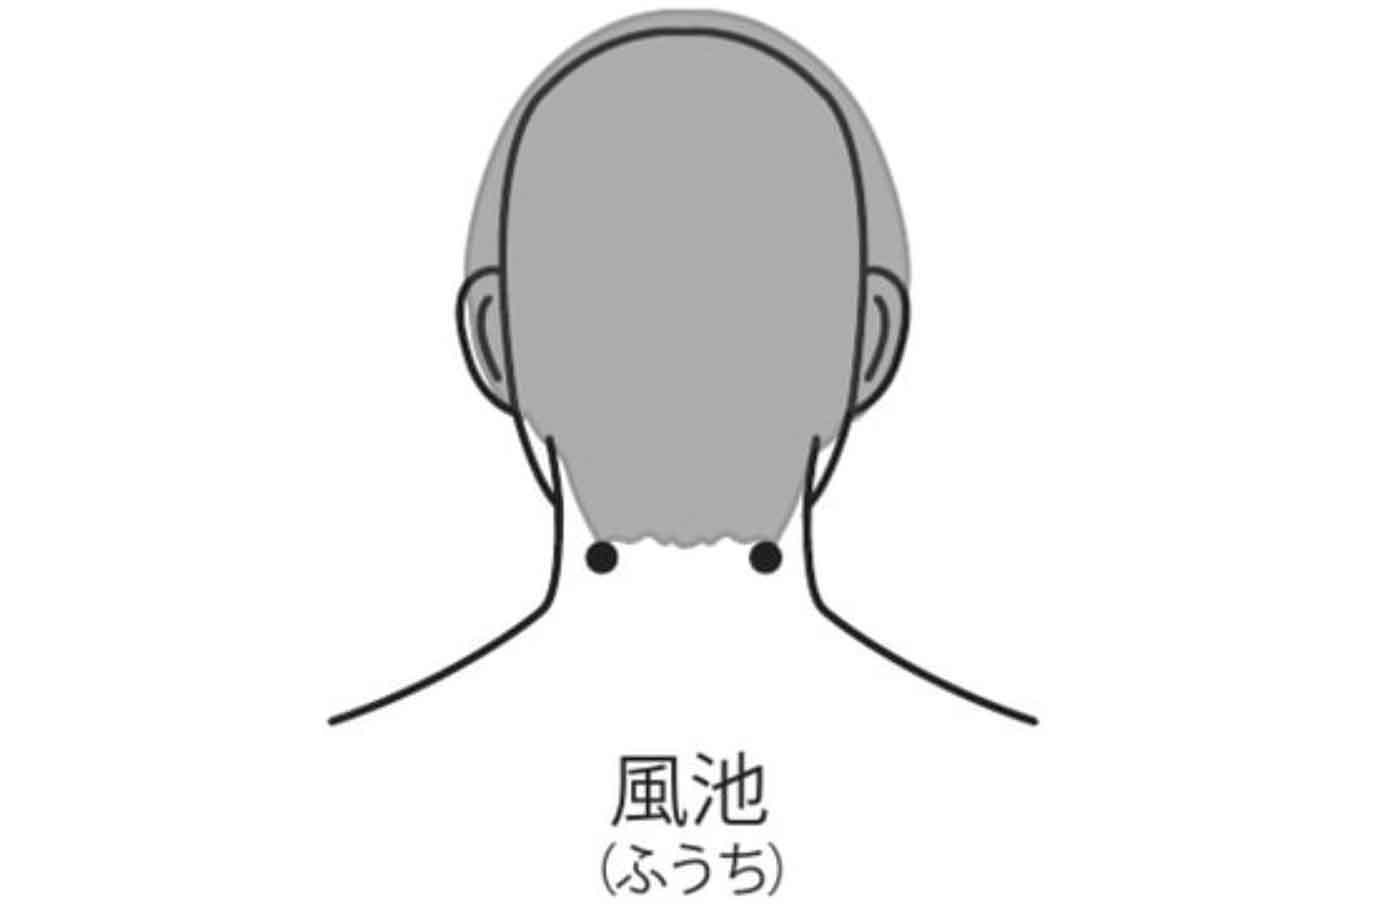 自律神経を整えるツボ、3つ目は頭と首の間のツボ「風池（ふうち）」です。